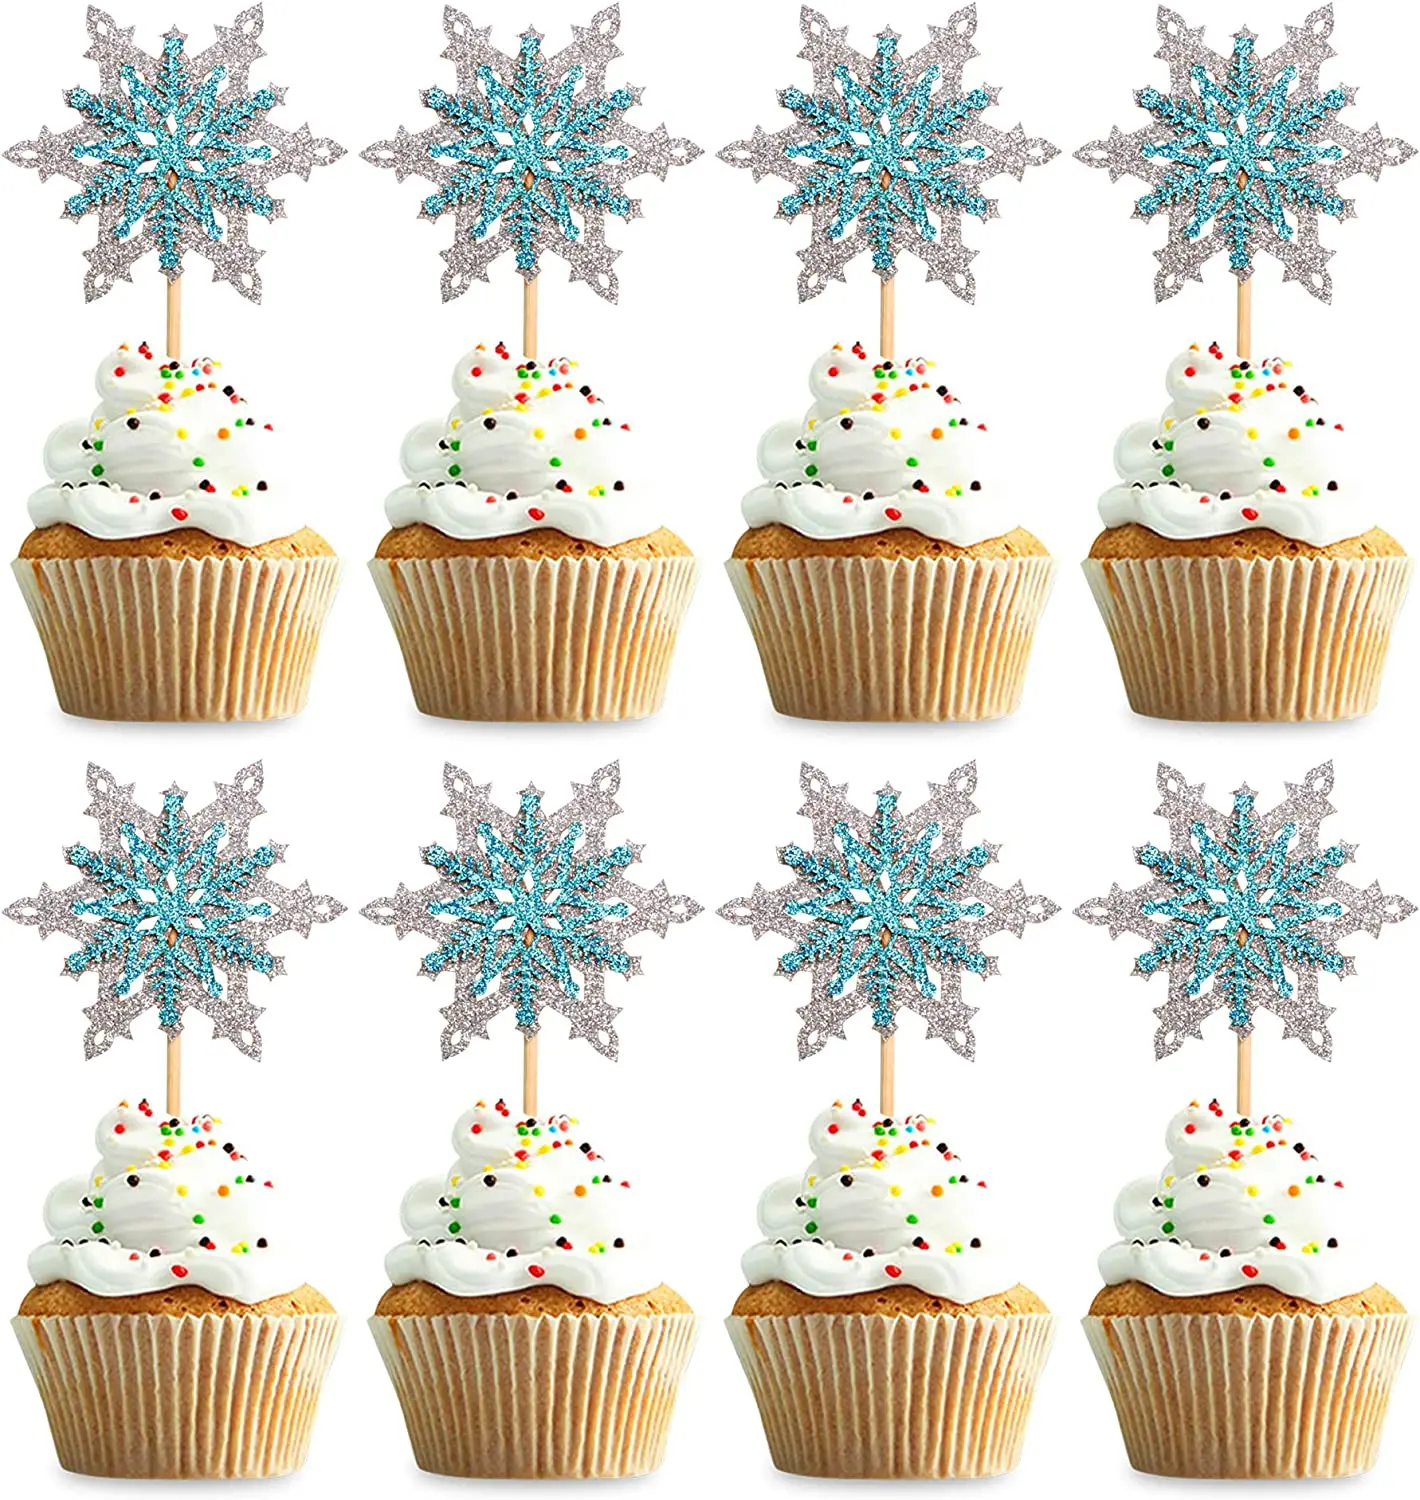 24 Pack Do Floco De Neve De Cupcake Toppers Tema De Inverno Cupcake Picaretas Do Chuveiro De Bebê Criança Festa De Aniversário, De Natal, Decorações De Bolos De Suprimentos